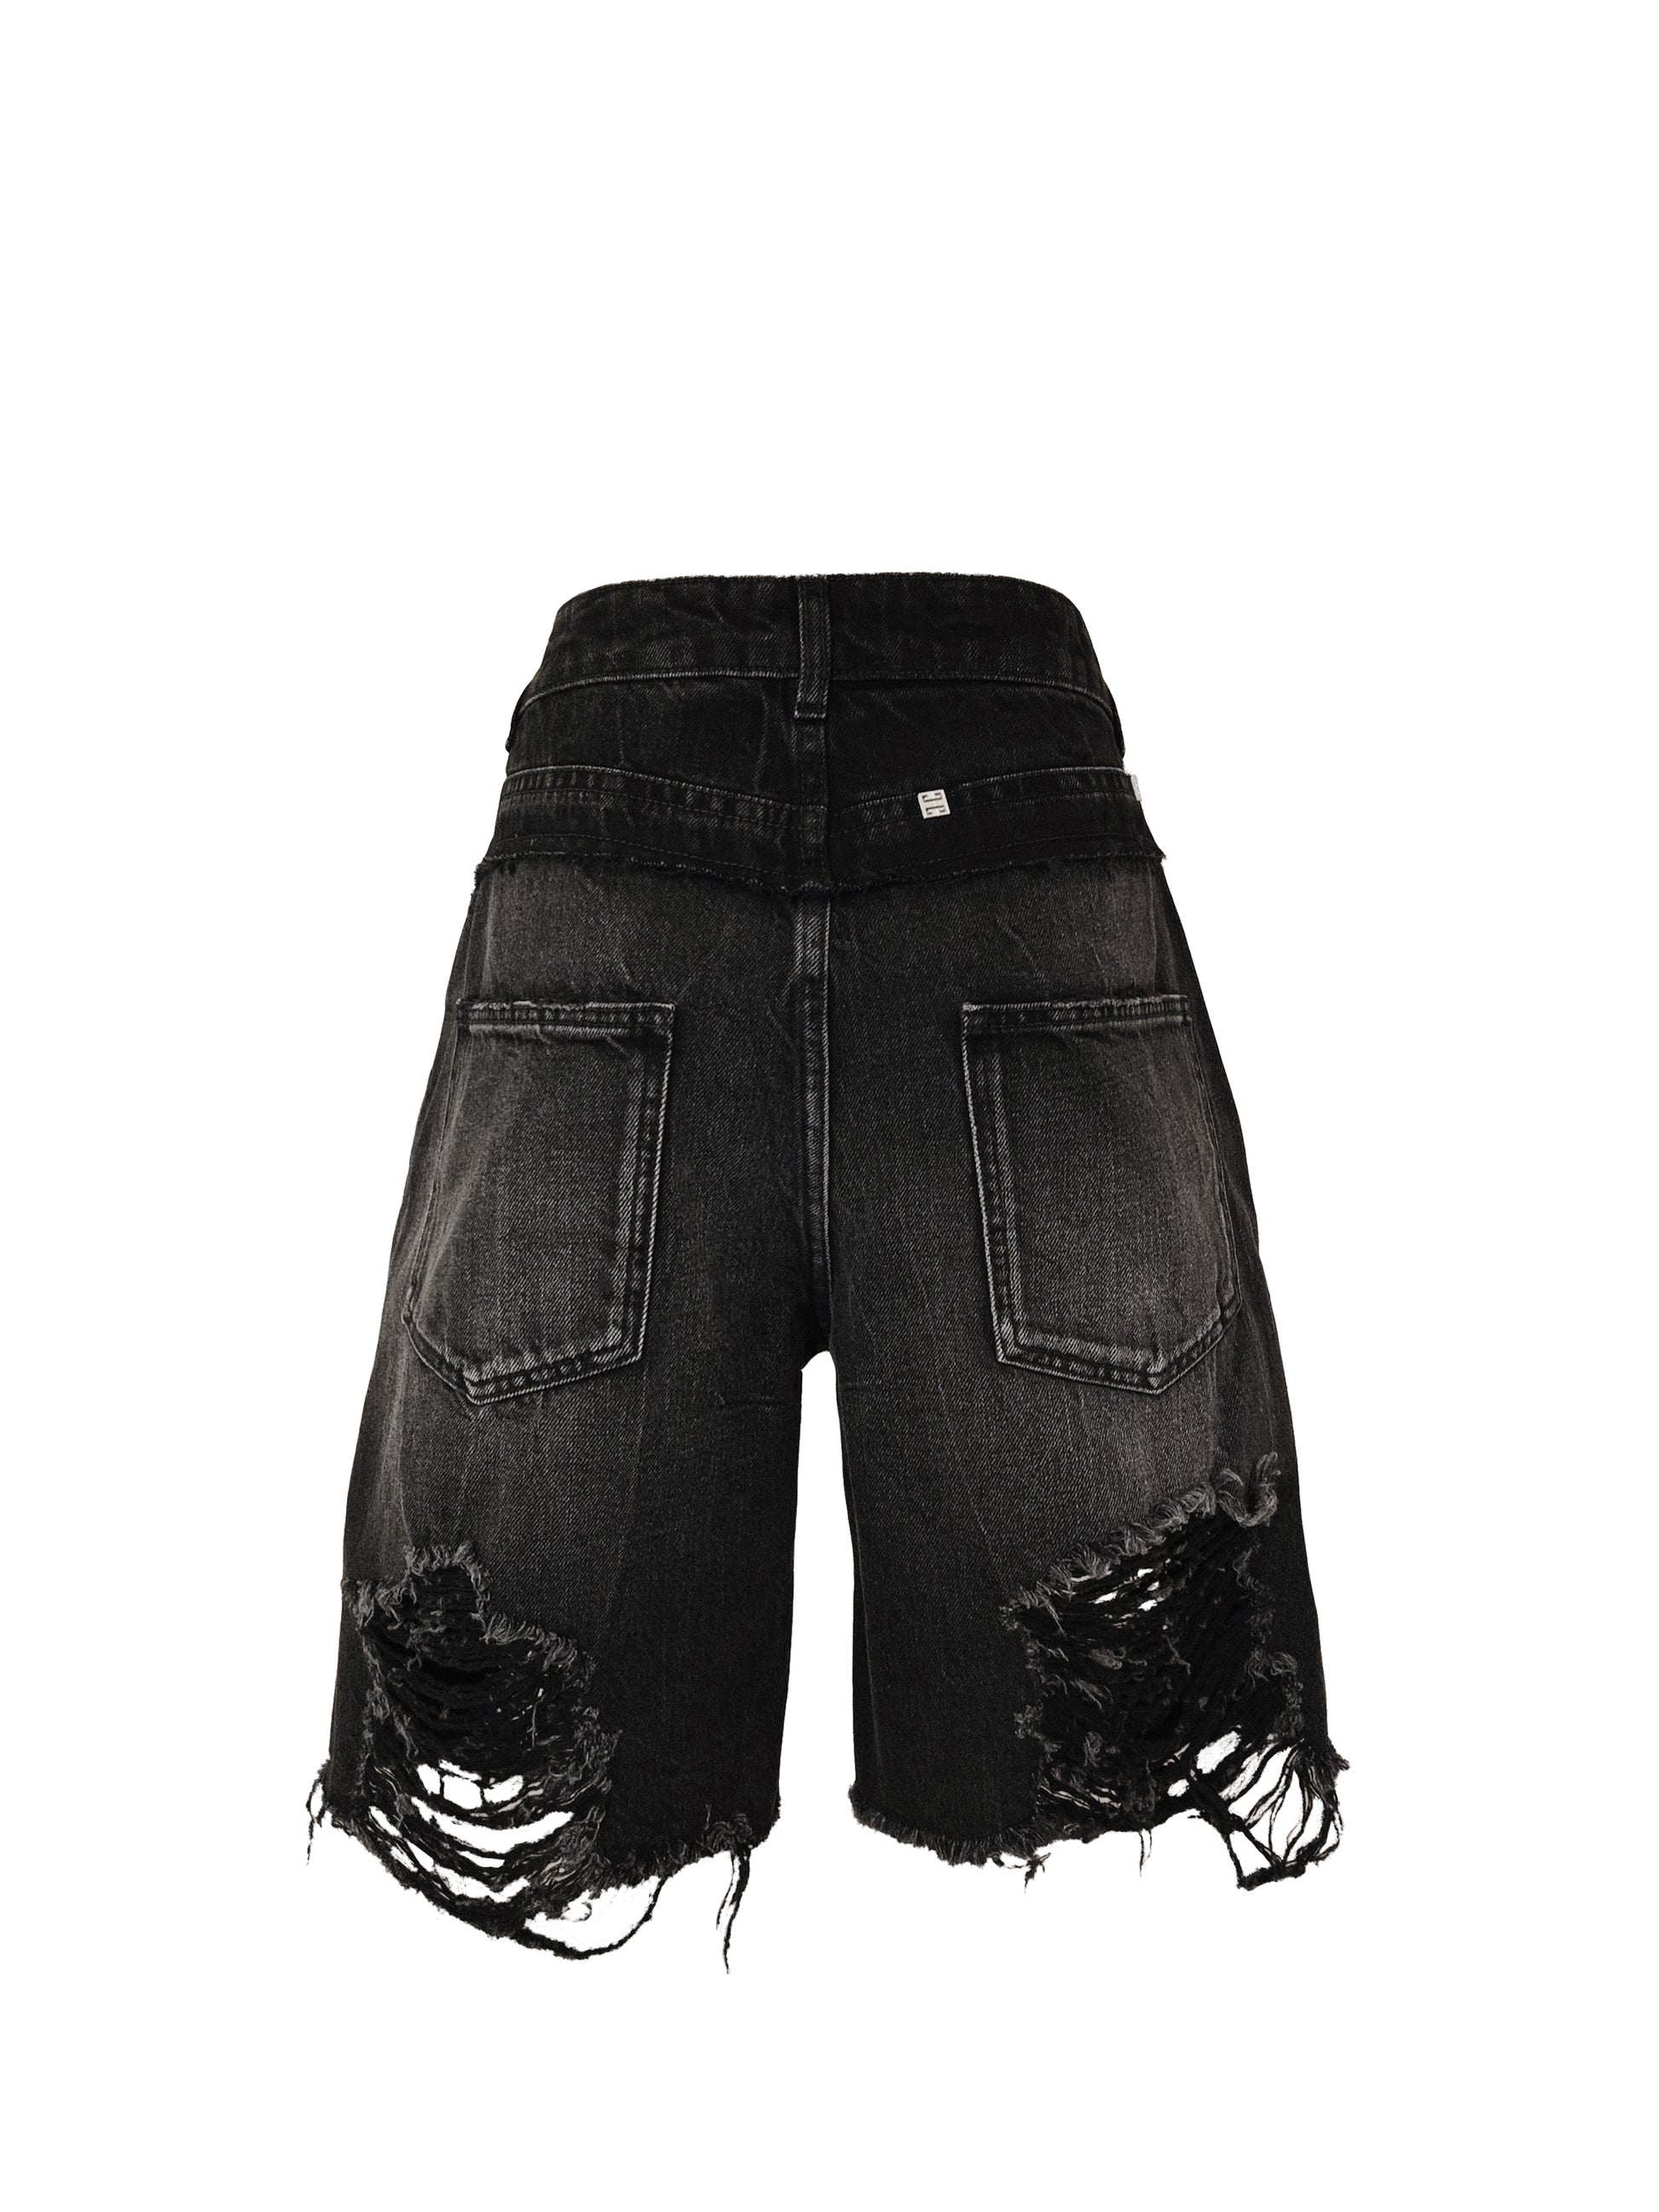 Diese Jeans Shorts von GIVENCHY ist durch ihre Distressed-Details, vorne sowie hinten am Bein, ein sehr auffallendes aber dennoch typisch für Givenchy elegantes Design. Die für die Marke typischen Logo-Elemente aus Metall befinden sich überall auf der Hose und zeigen die Qualität der Marke.